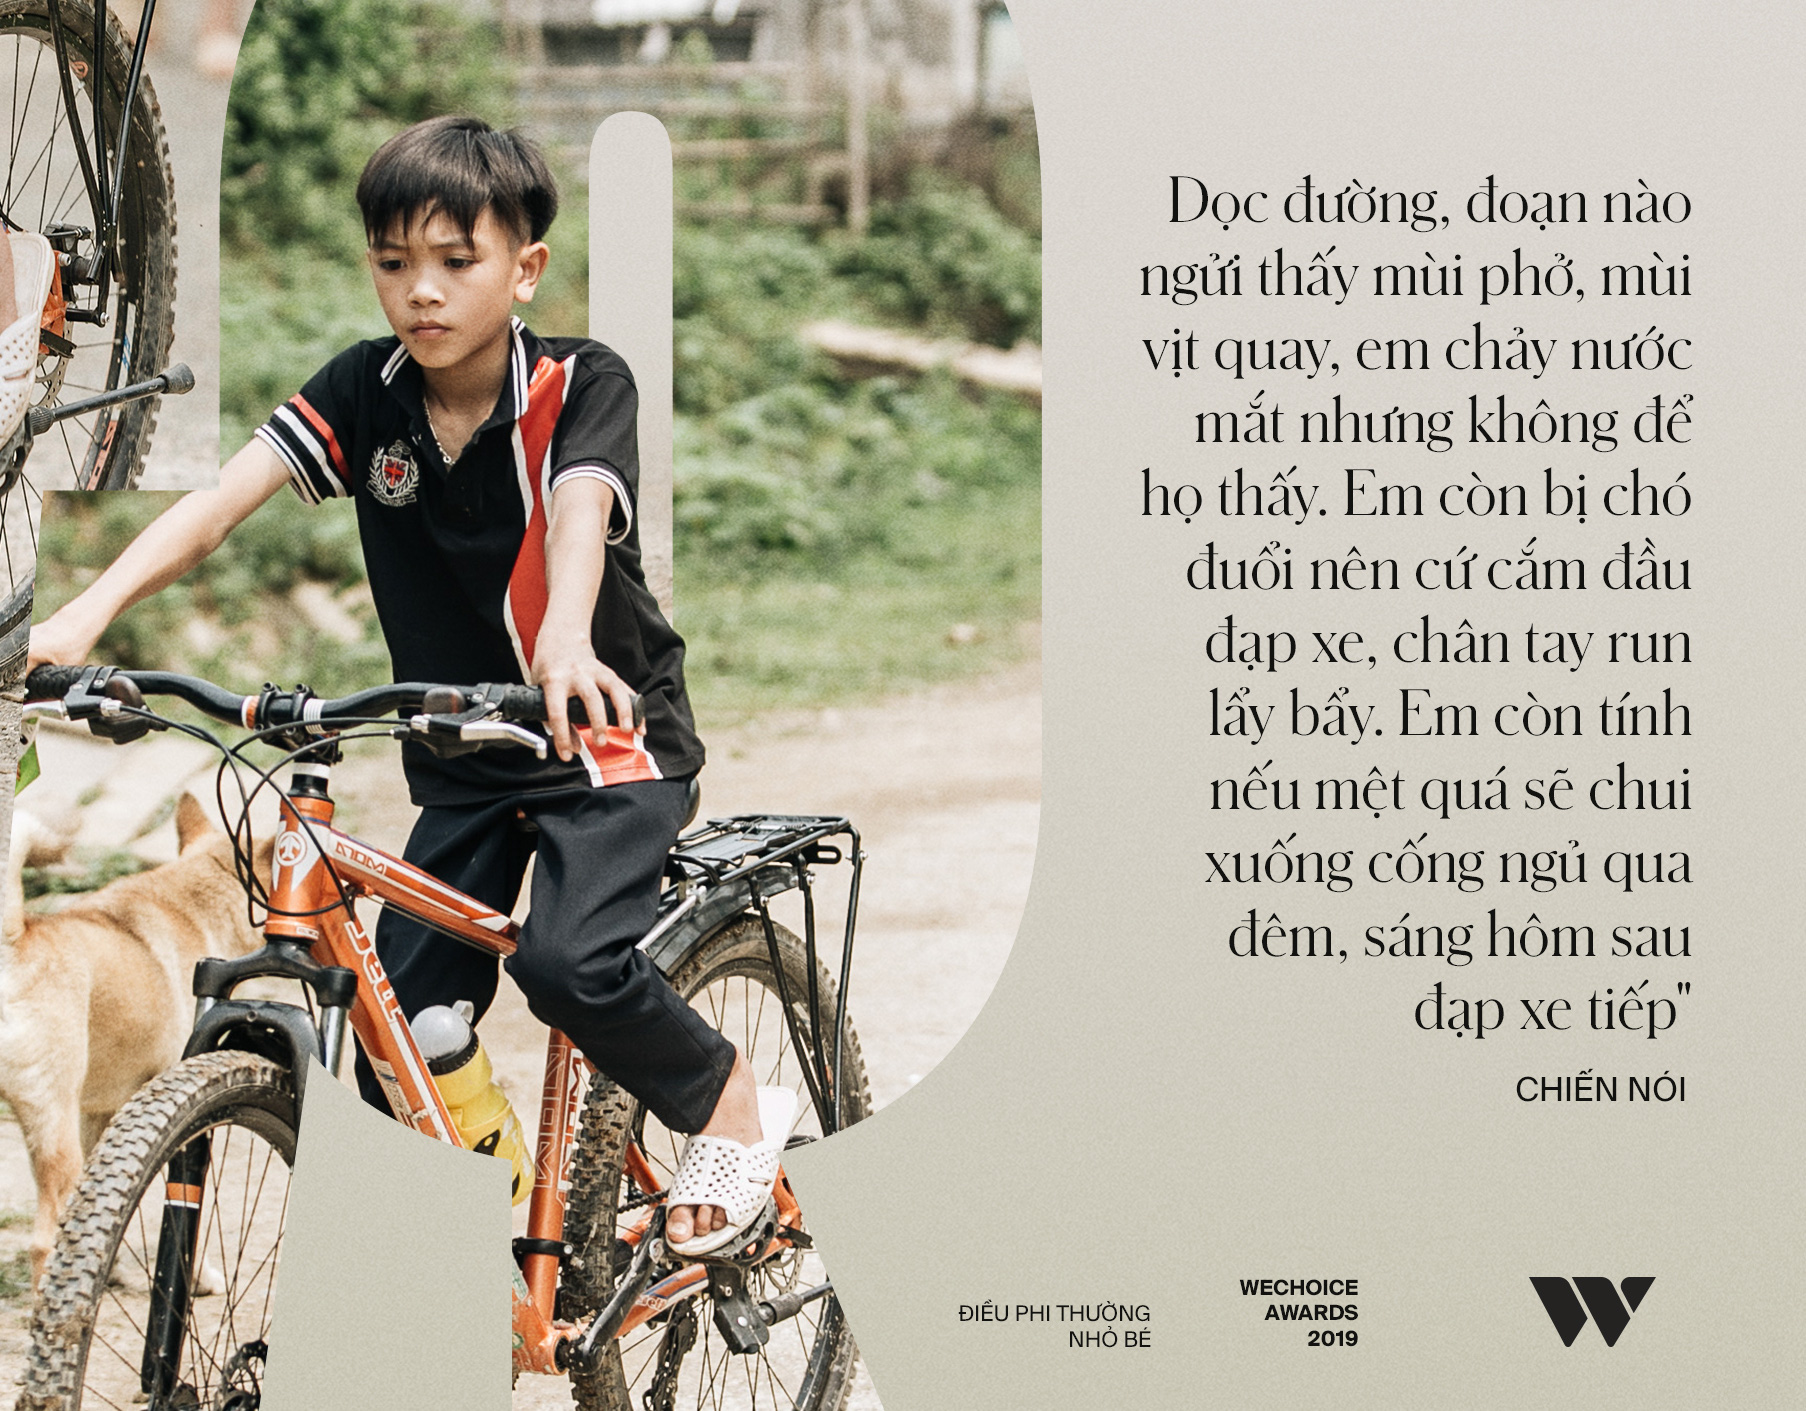 Cậu bé dân tộc Vì Quyết Chiến đạp xe 100km xuống Hà Nội thăm em: Nếu Lực còn sống, em mong Lực đừng cố chấp, liều lĩnh như em” - Ảnh 7.